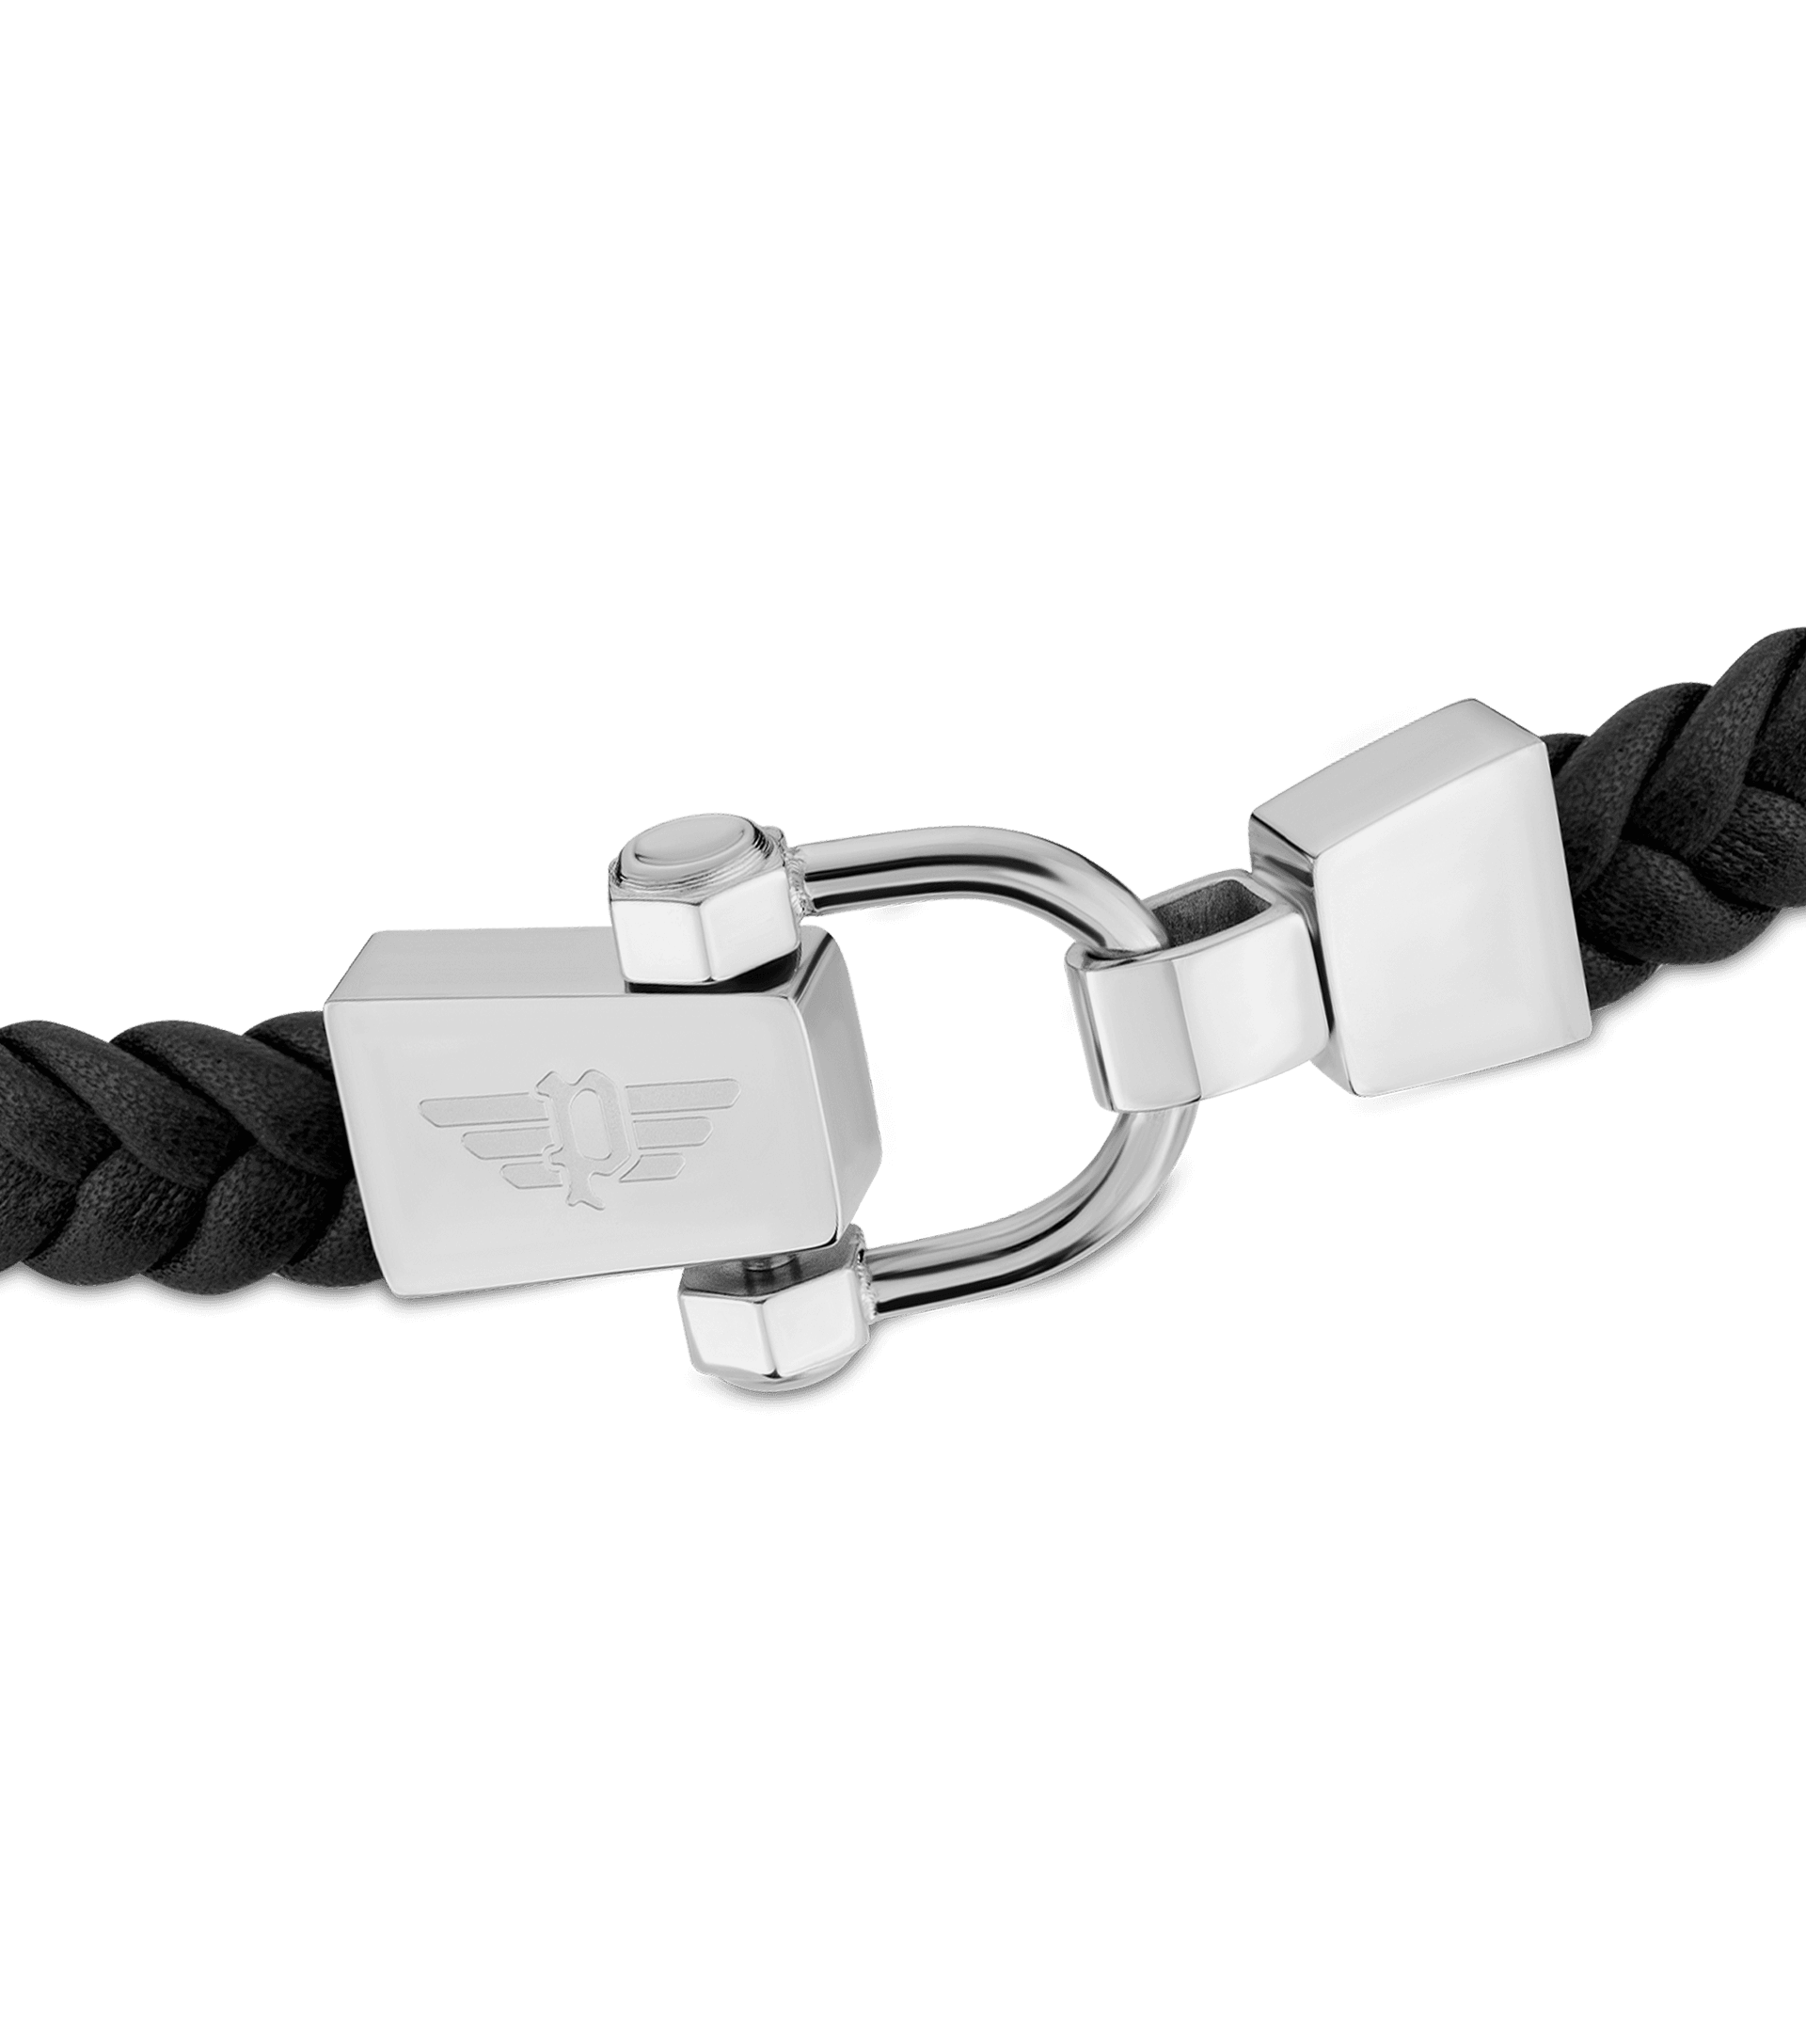 Police jewels - Bolt Bracelet Police For Men PEAGB2211201